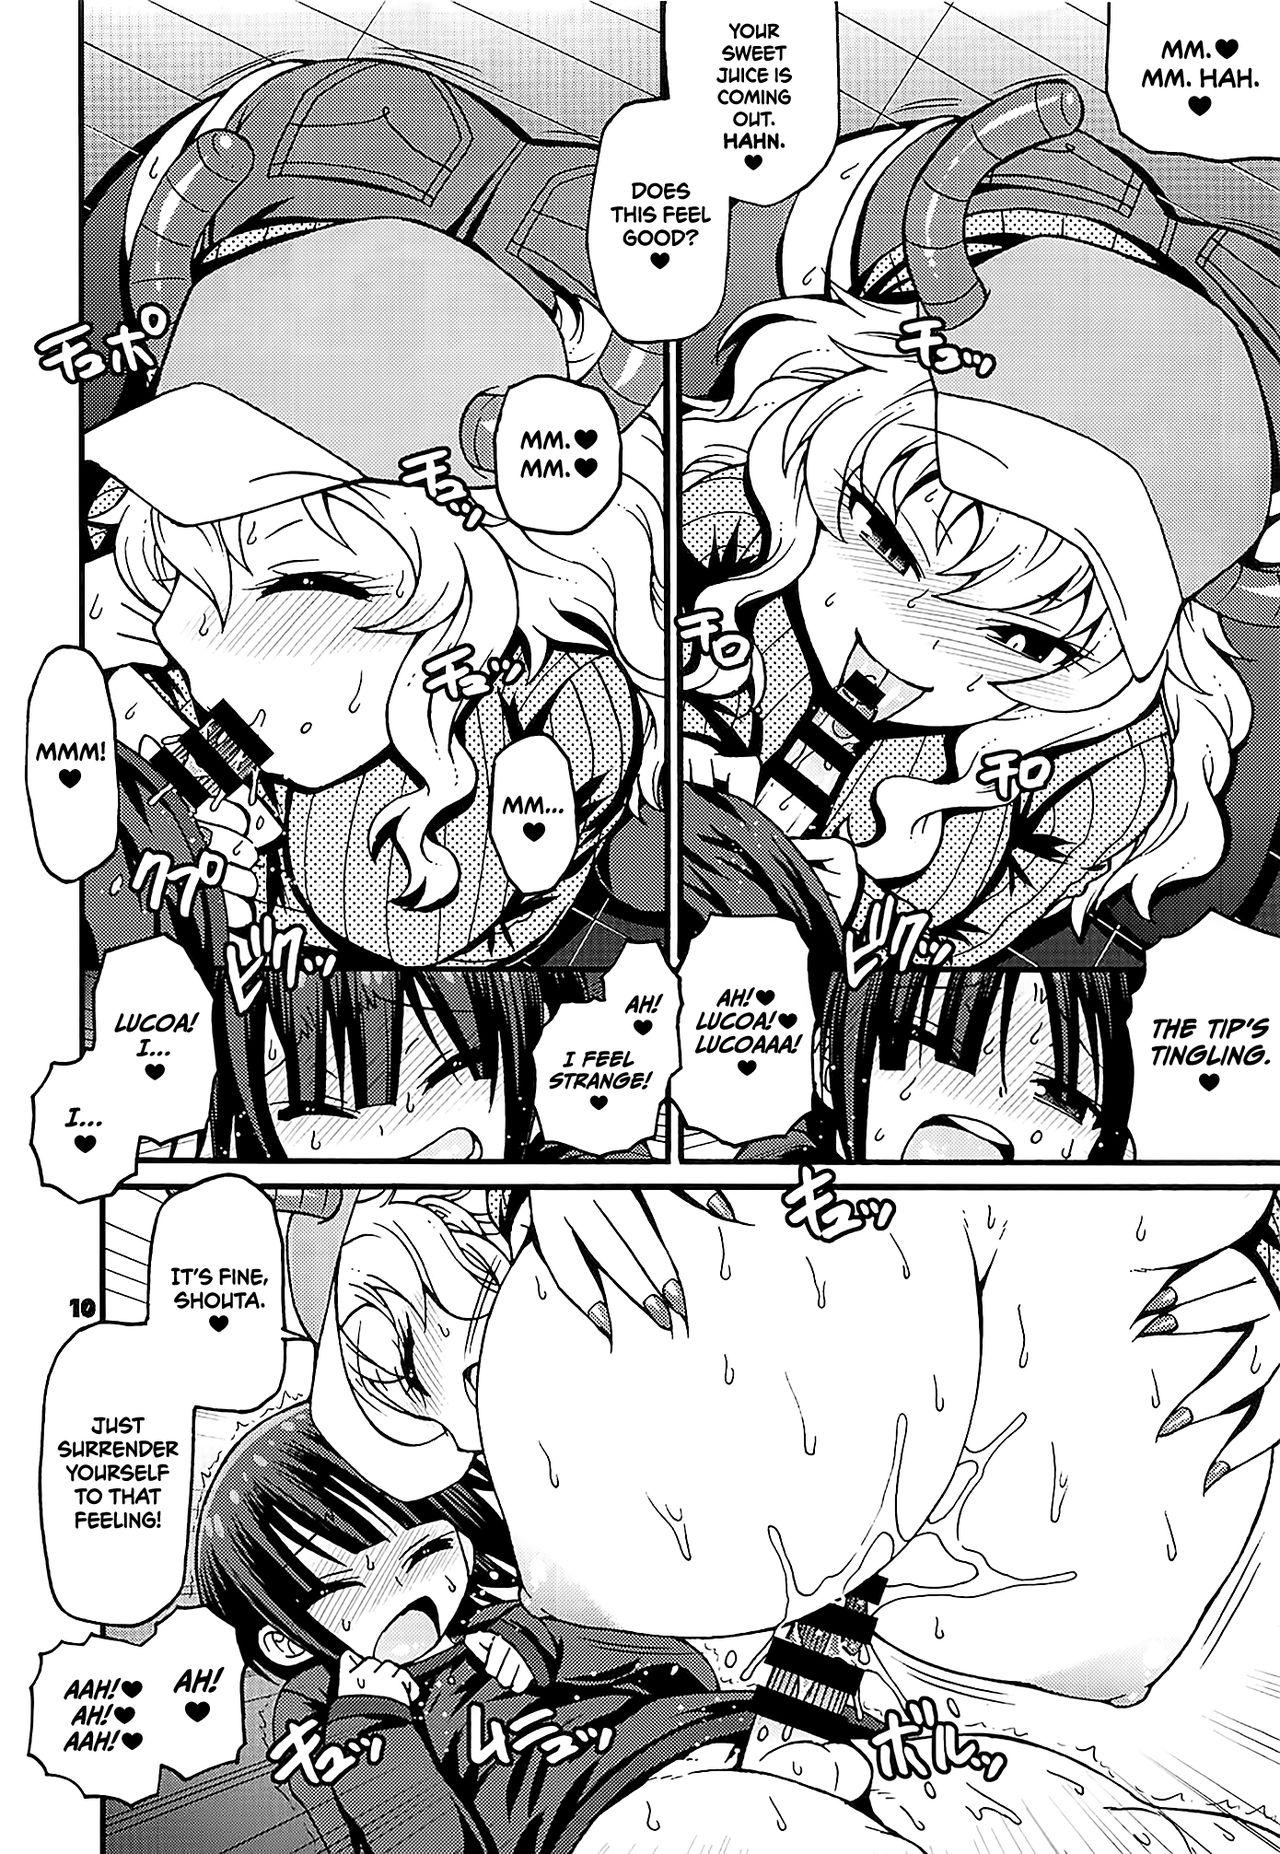 Humiliation Maybe He'll Know - Kobayashi-san-chi no maid dragon She - Page 9